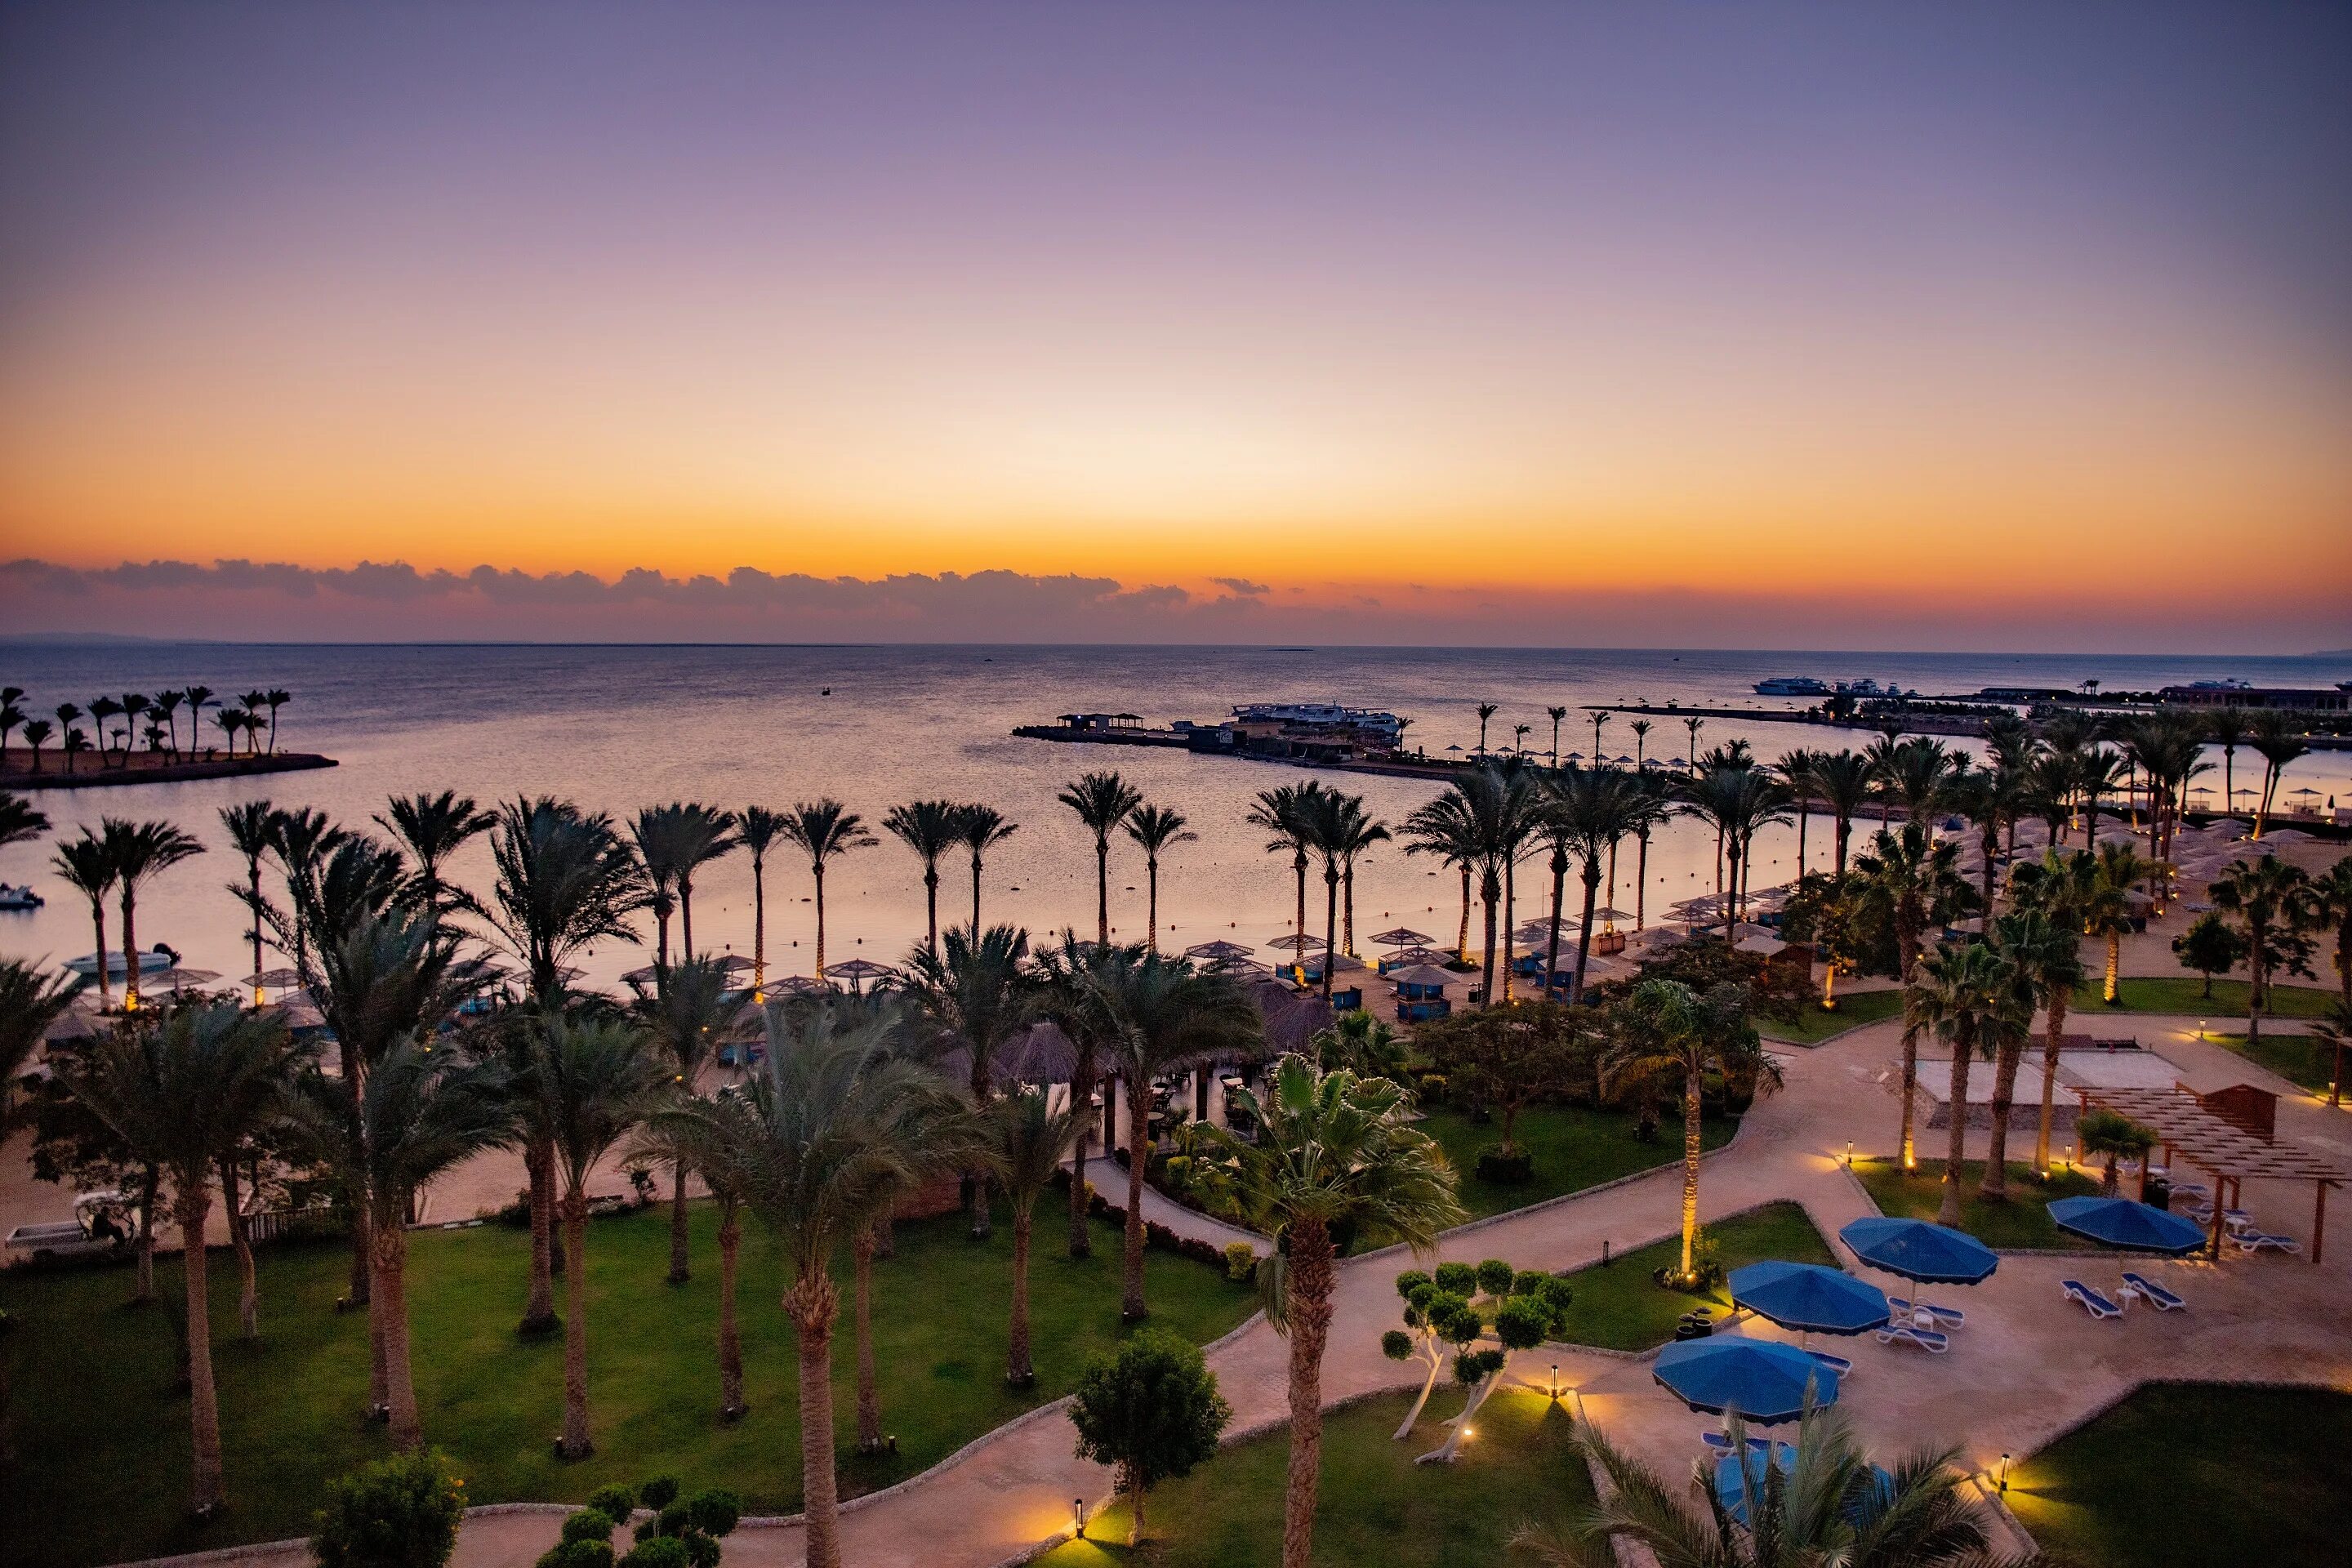 Мовенпик Египет Хургада. Континенталь отель Хургада 5. Movenpick Resort 5 Хургада. Continental Hotel Hurghada 5 Египет Хургада.